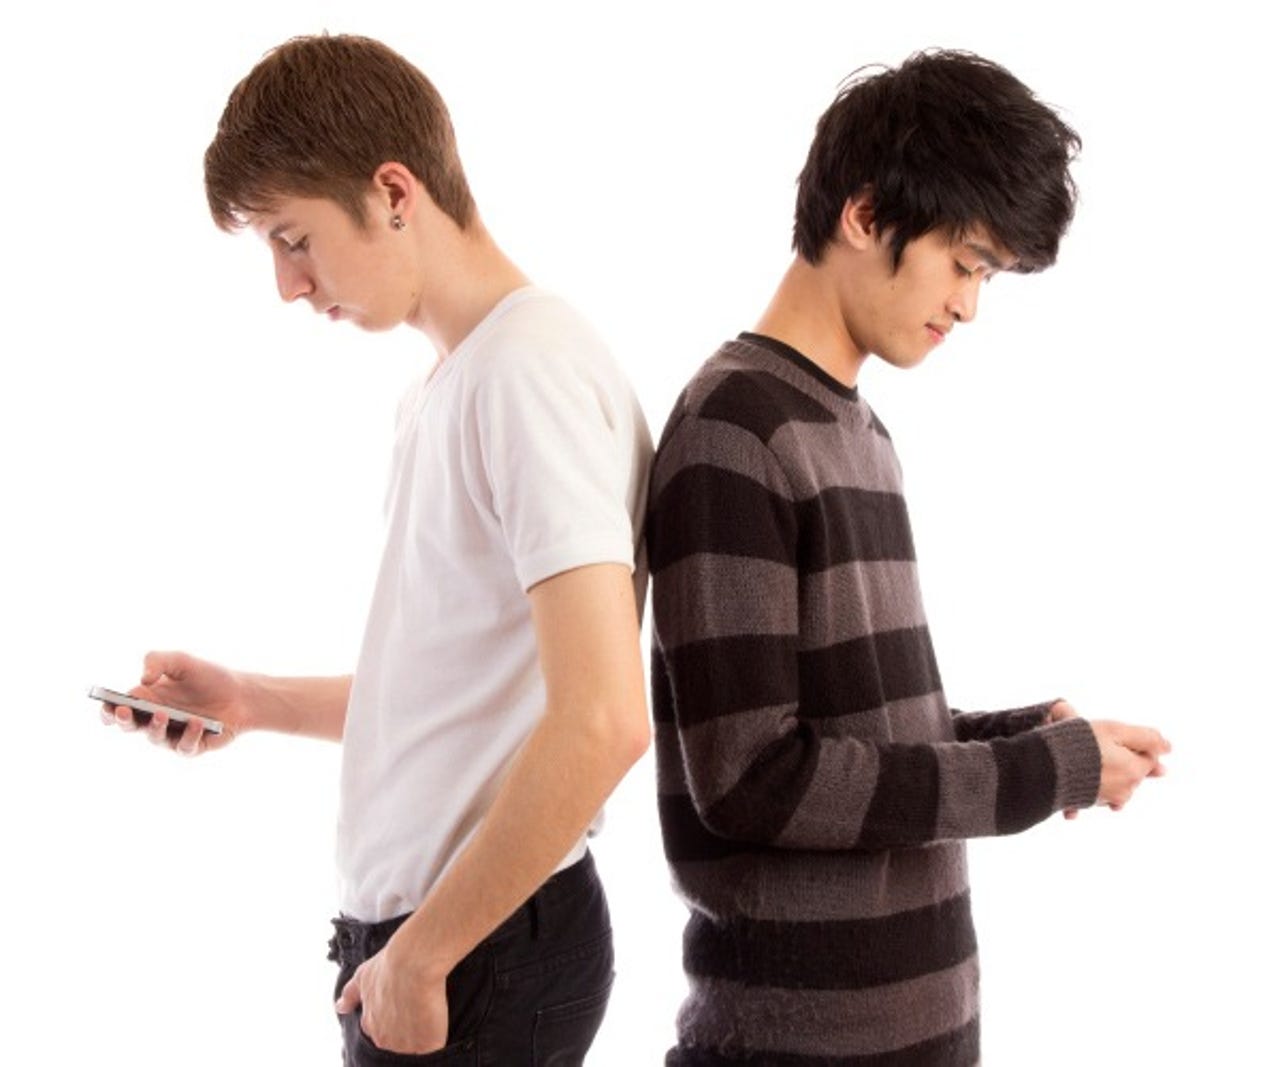 teens-smartphones-600-600x500-1.jpg